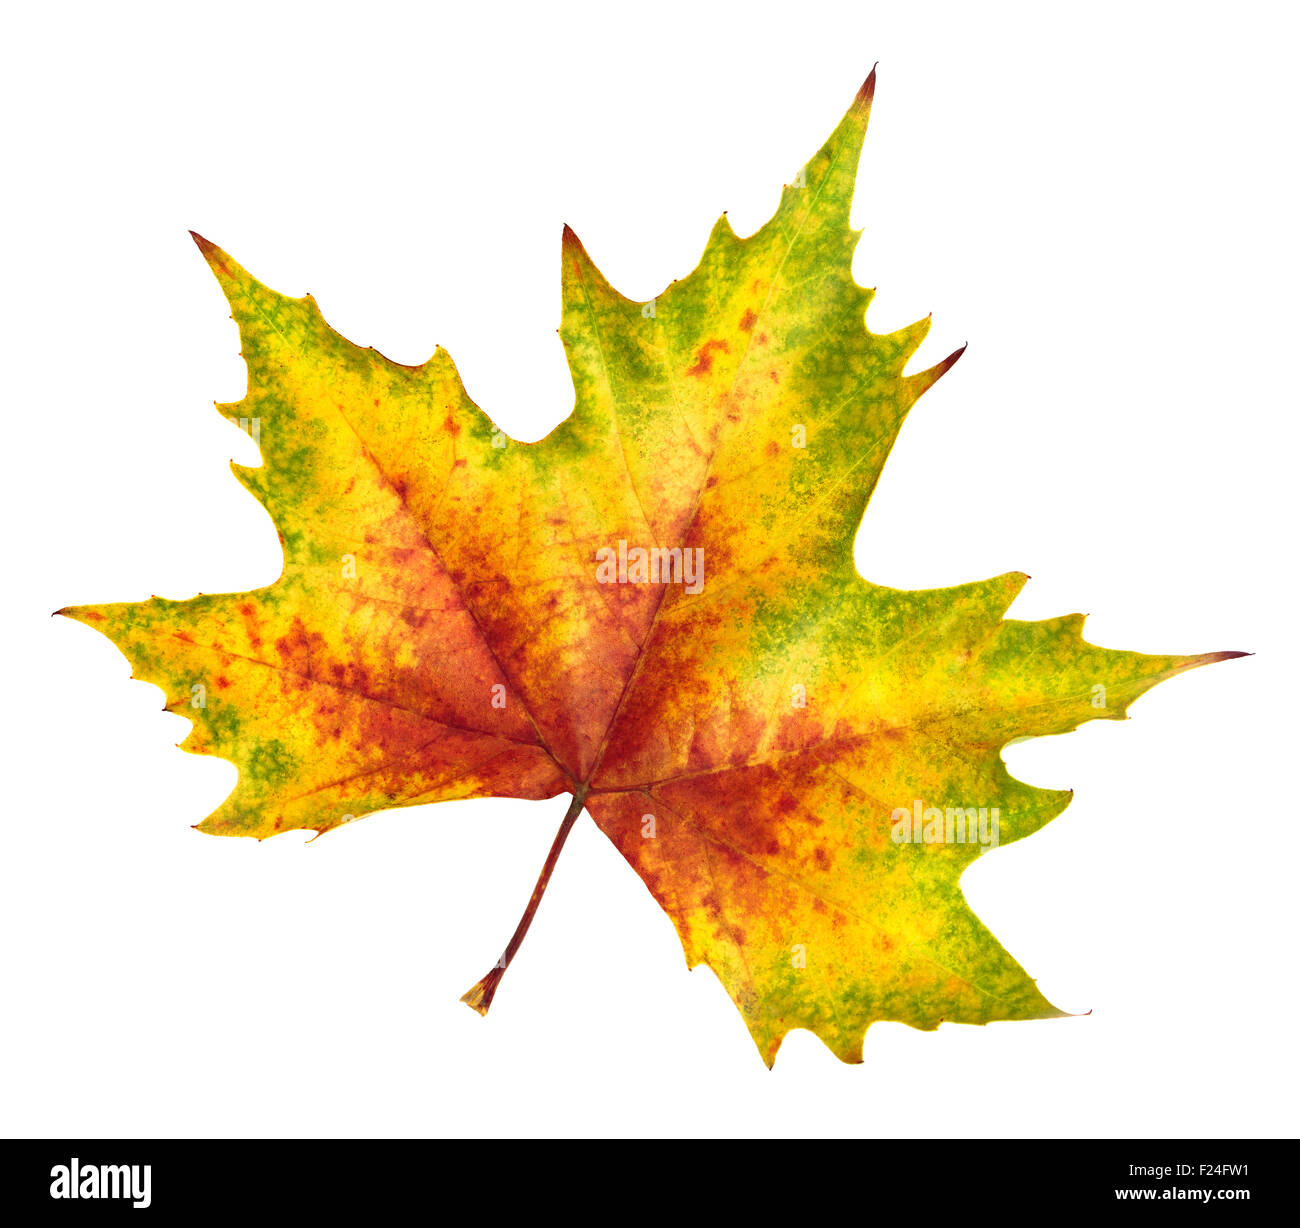 Schöne bunte Maple leaf in rot, gelb und grün, Symbol für Herbst, isoliert auf weißem Hintergrund, reich an Farben und Details Stockfoto